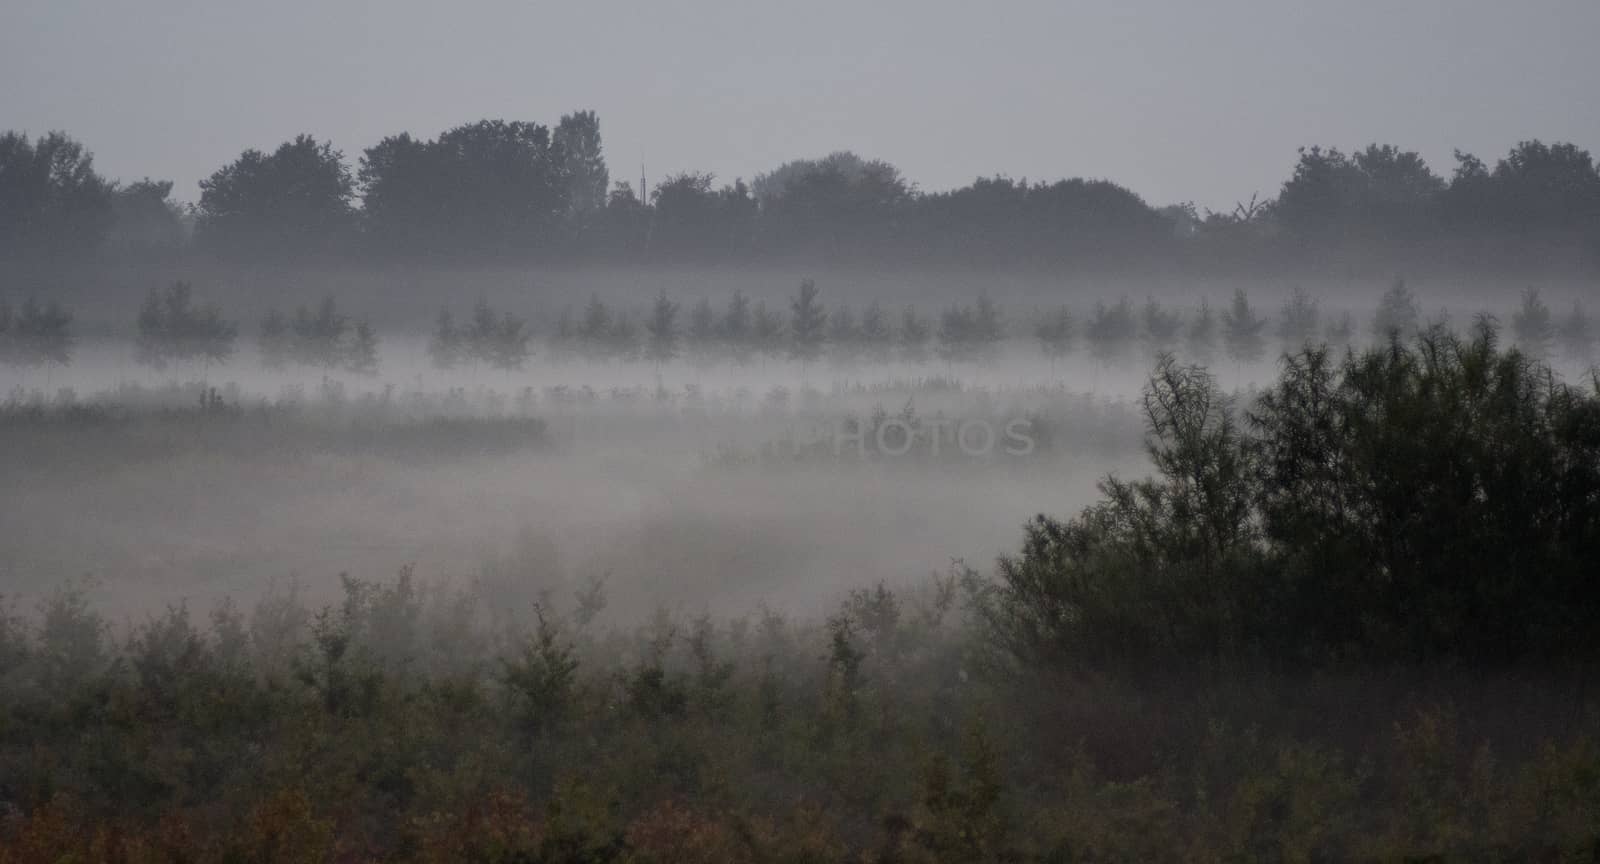 fog on the fields at dawn by artkom68